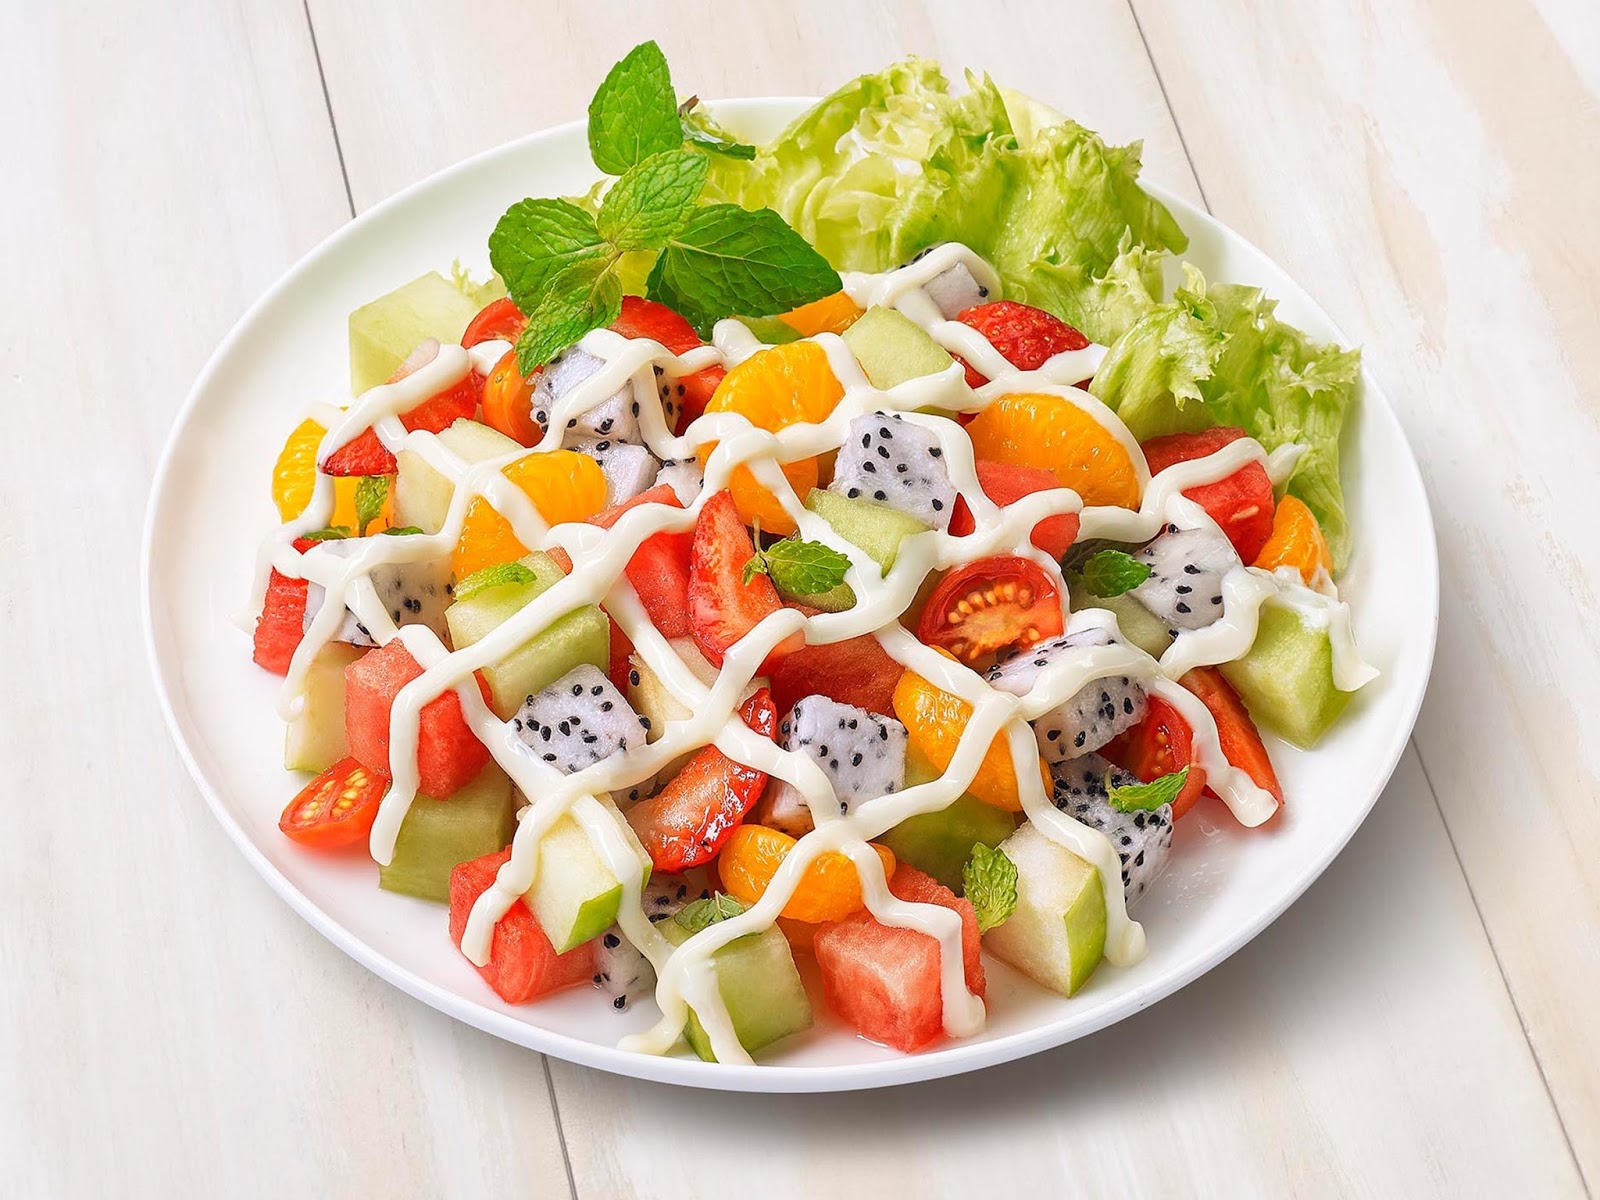 Resep Salad  Buah Sederhana Segar Dan Enak Resepcarabuat